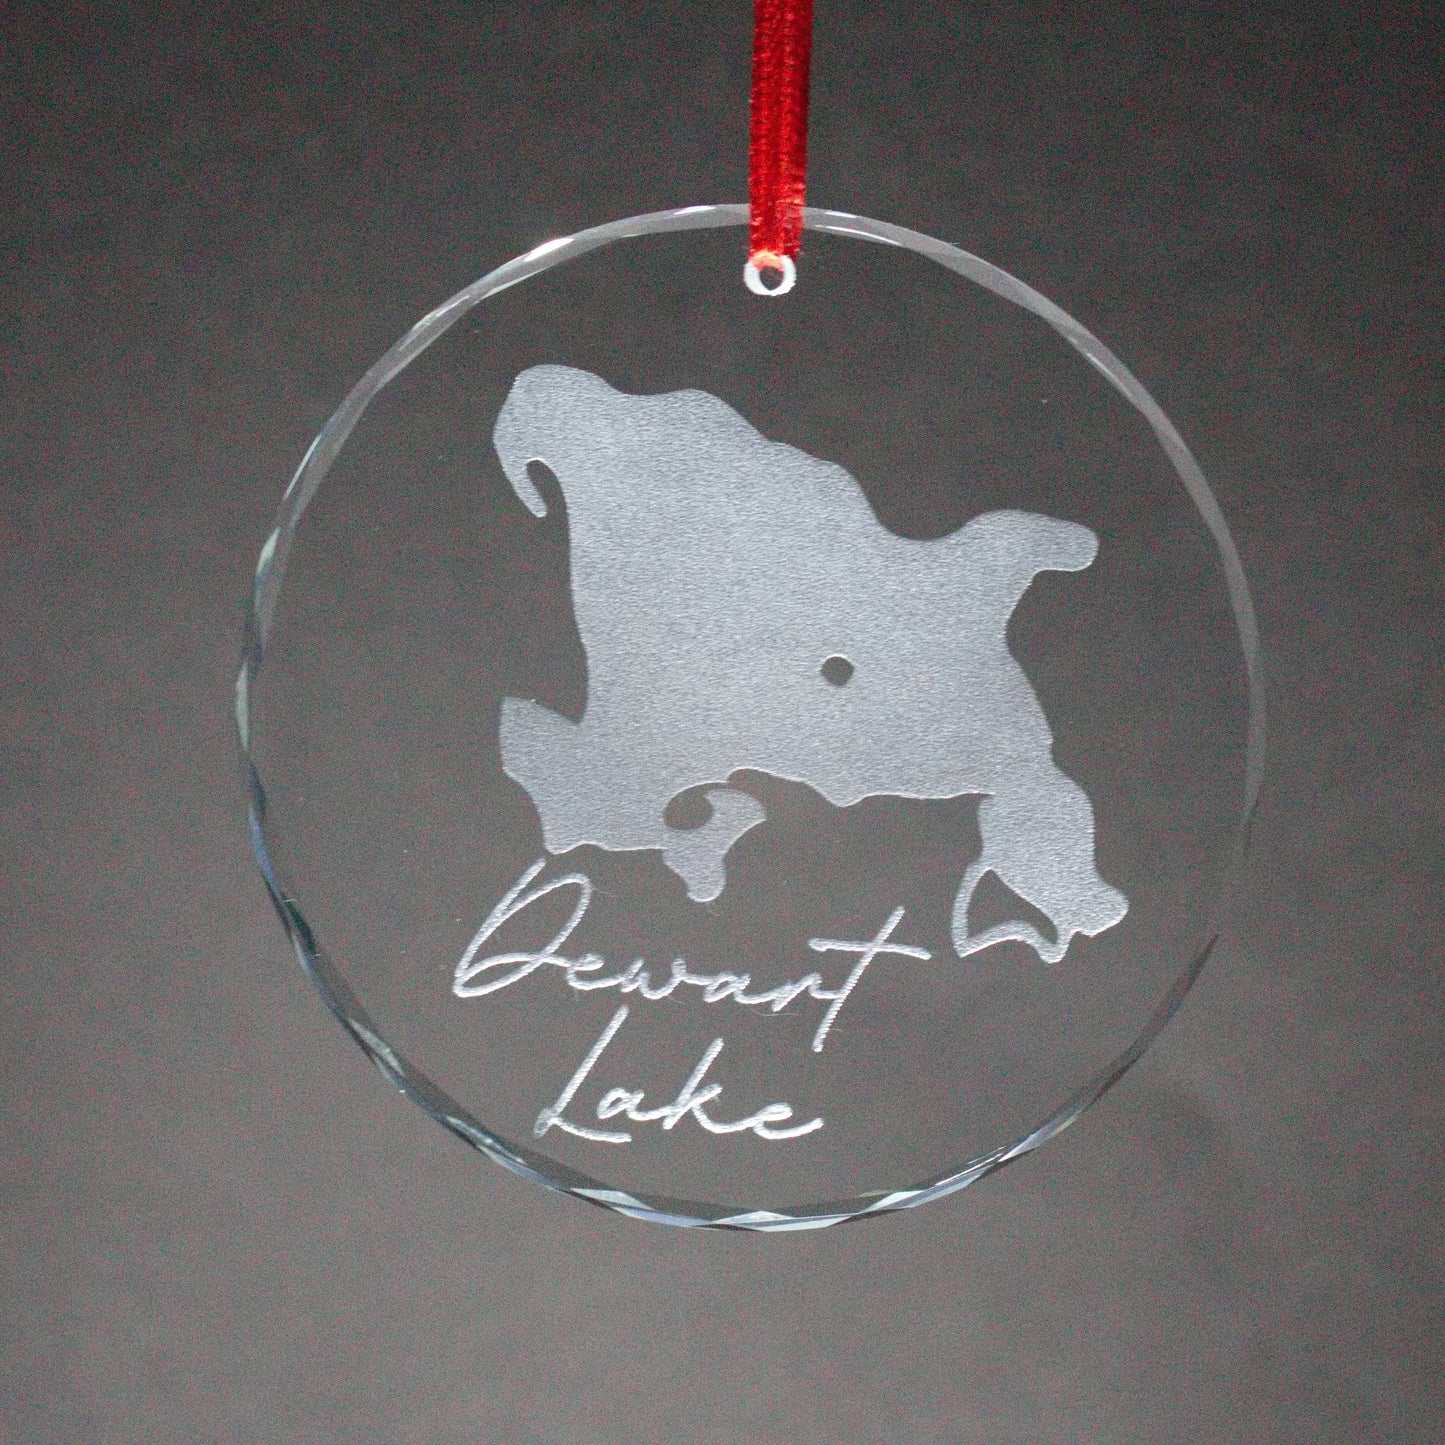 Glass Christmas Ornament Lake (Indiana)